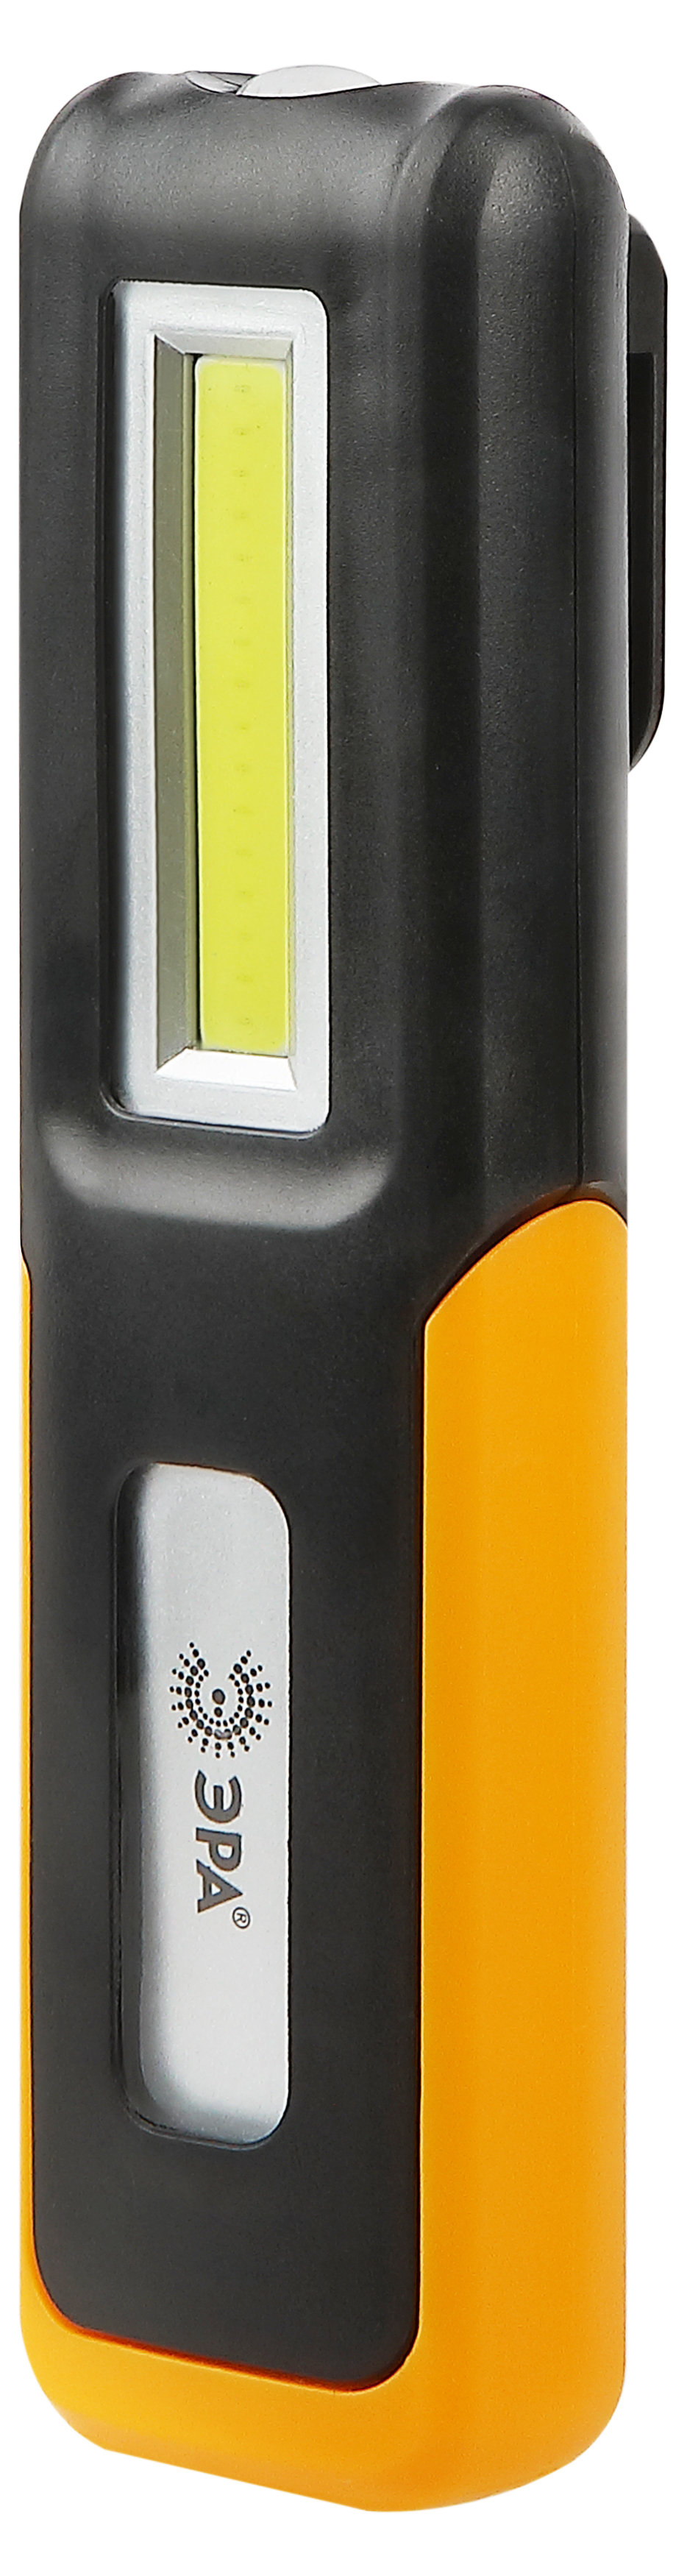 Светодиодный фонарь ЭРА Рабочие, серия  Практик  RA-803 аккумуляторный, крючок, магнит, miscro USB